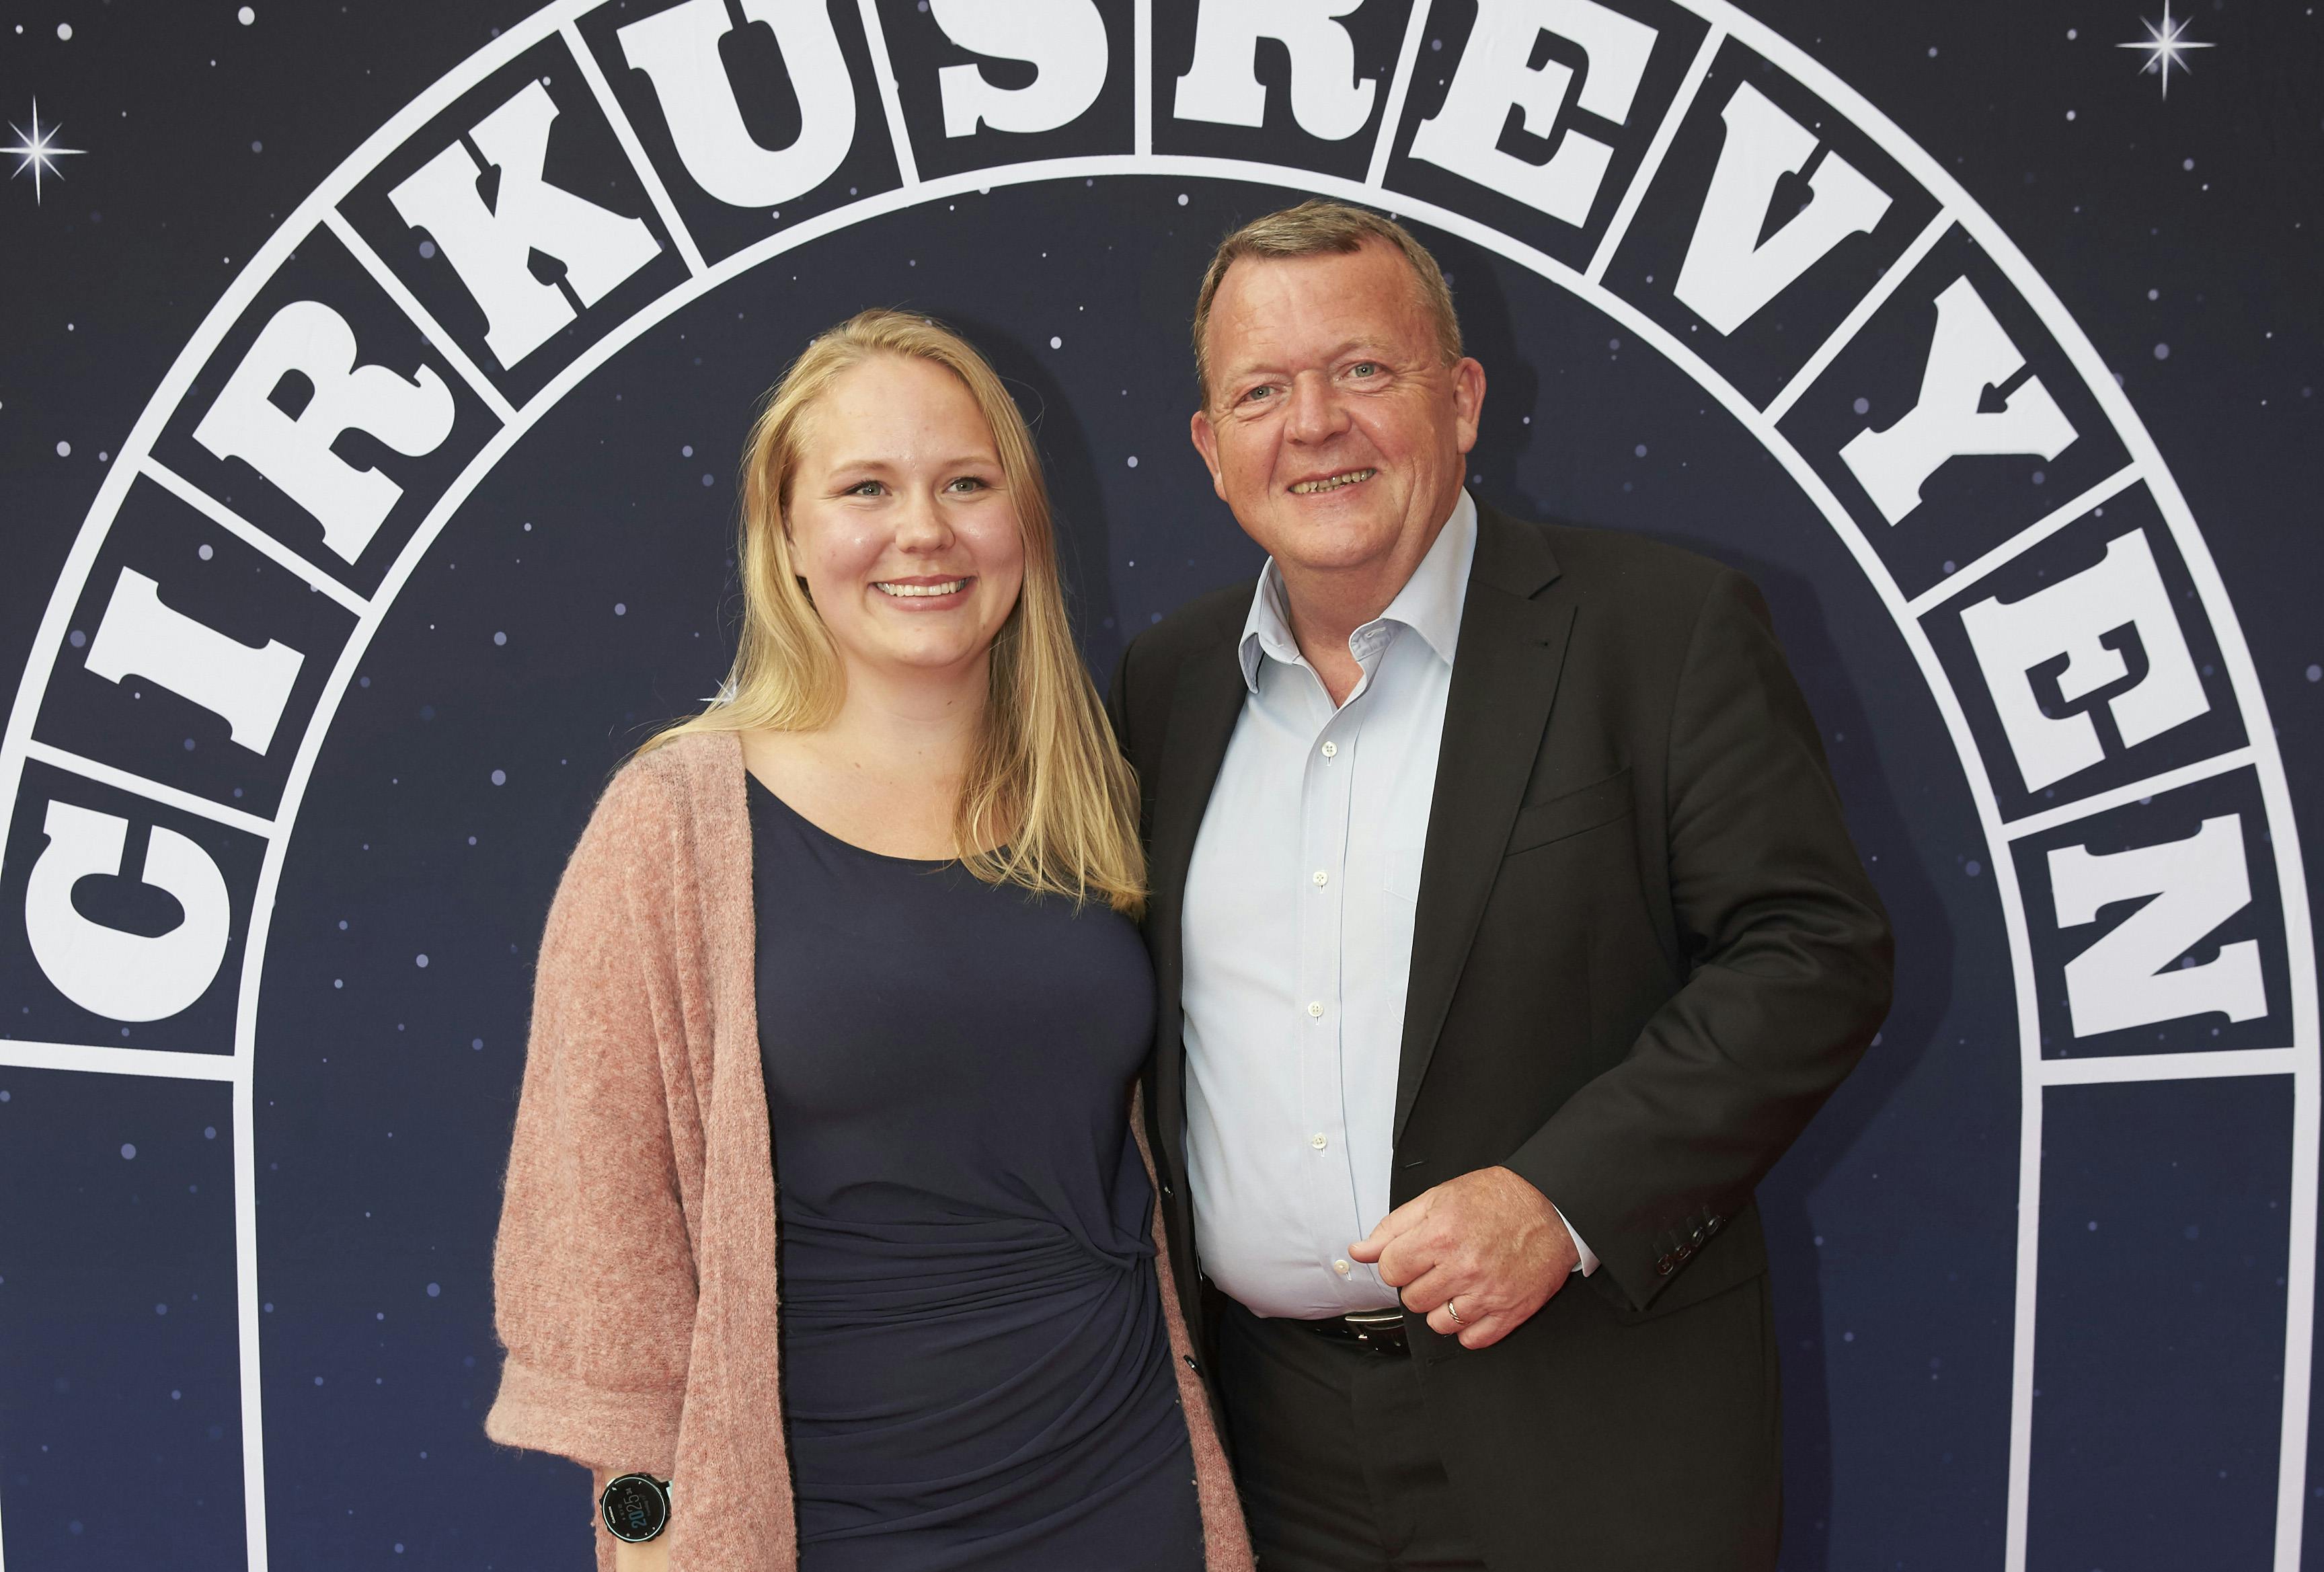 Lars Løkke Rasmussens datter Lisa venter sig, og dermed kan Danmarks udenrigsminister se frem til at blive morfar. 